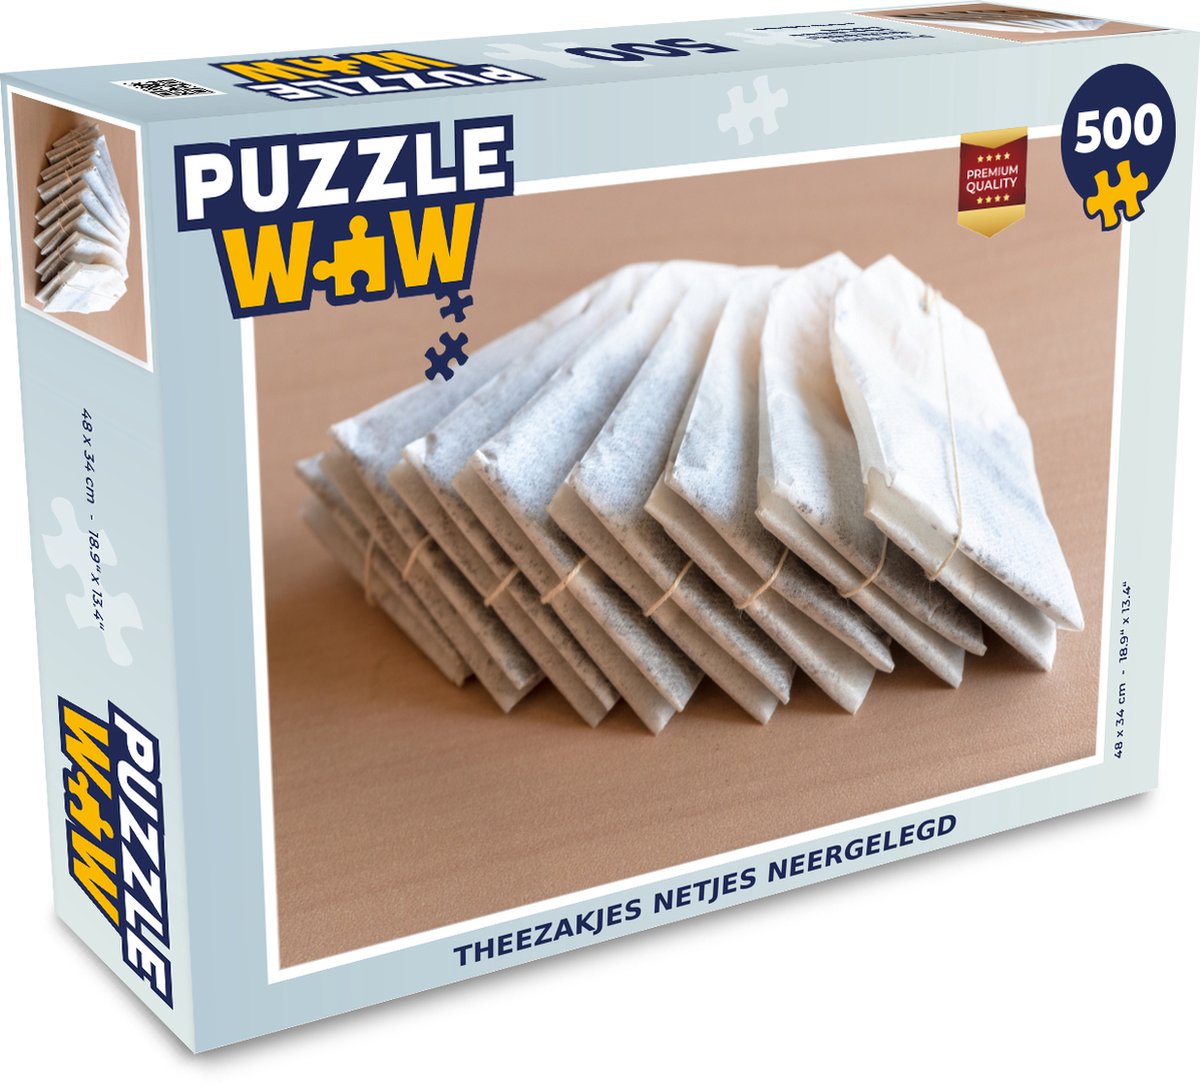 Afbeelding van product Puzzel 500 stukjes Theezakjes - Theezakjes netjes neergelegd - PuzzleWow heeft +100000 puzzels